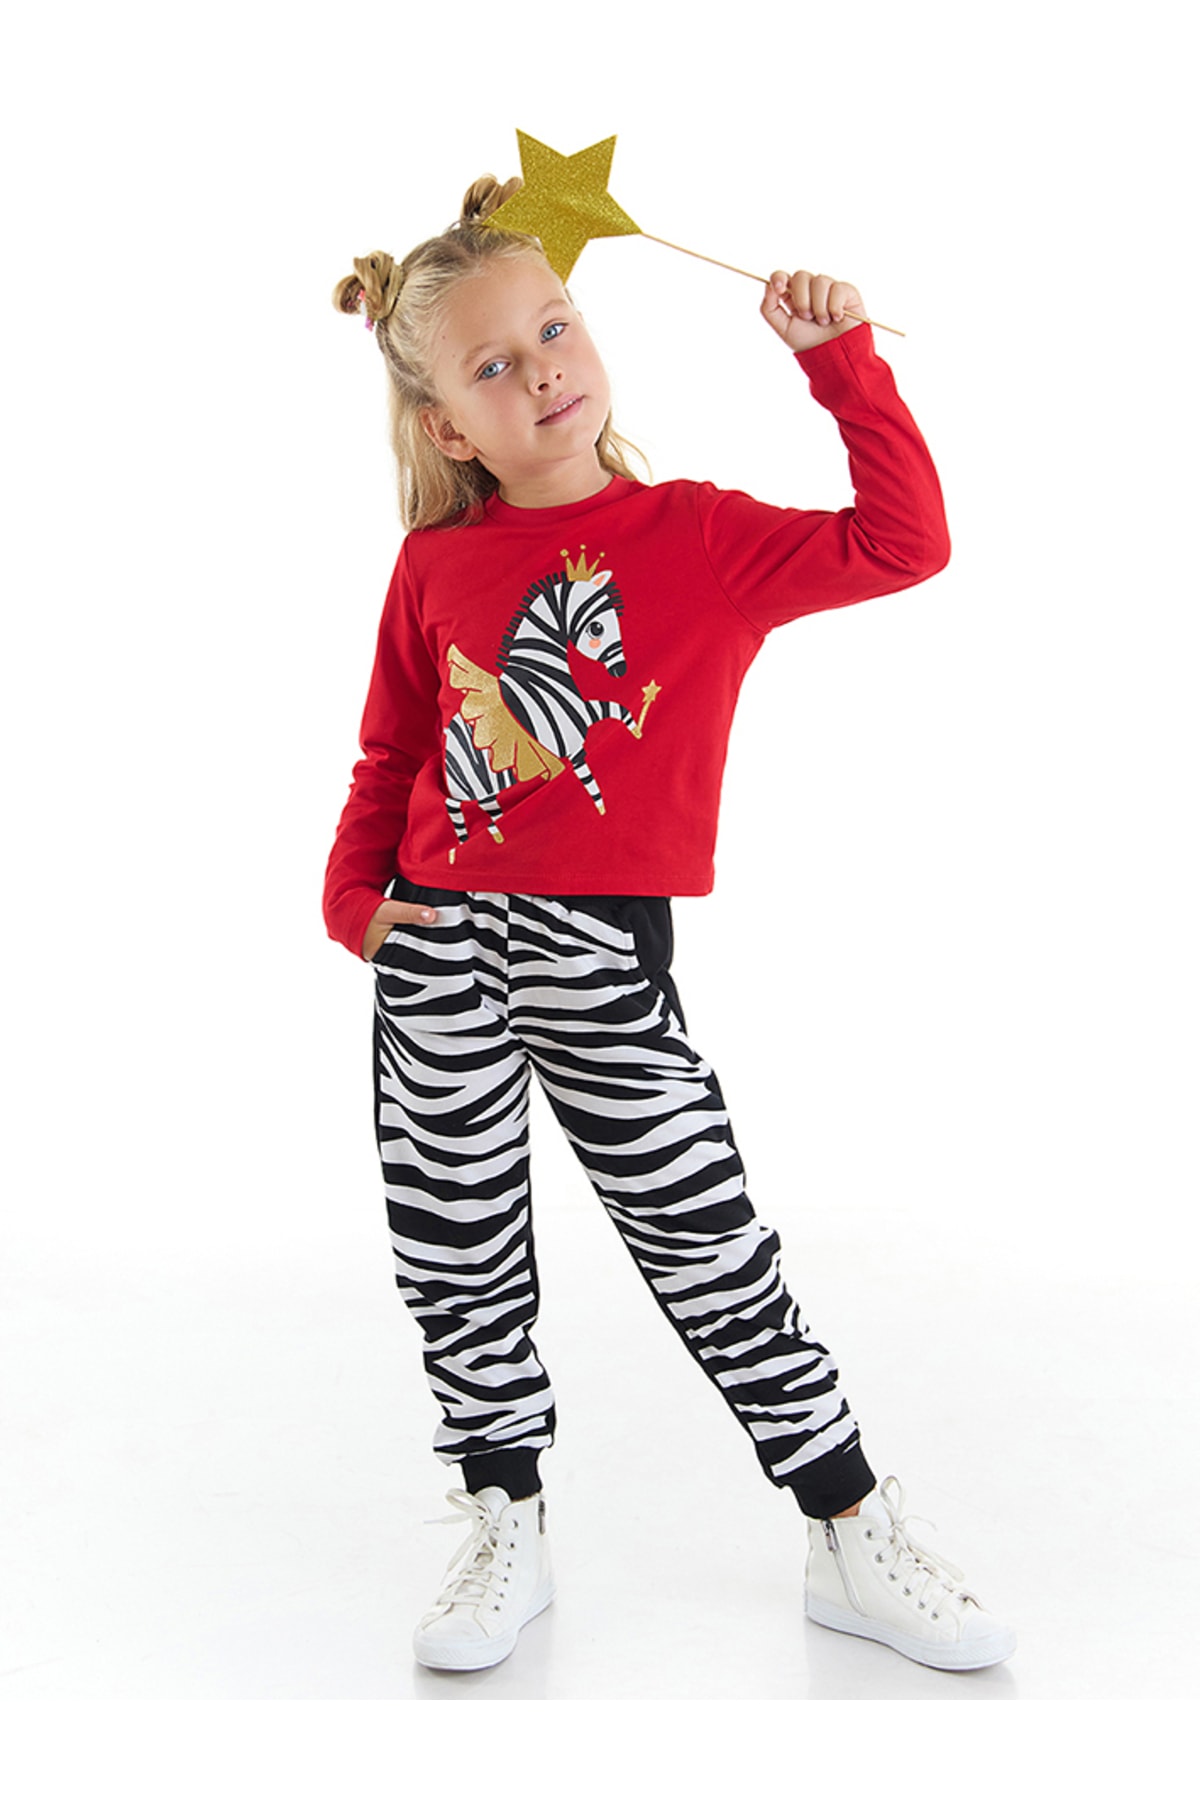 Levně Denokids Ballerina Zebra Girls Kids T-shirt Pants Suit